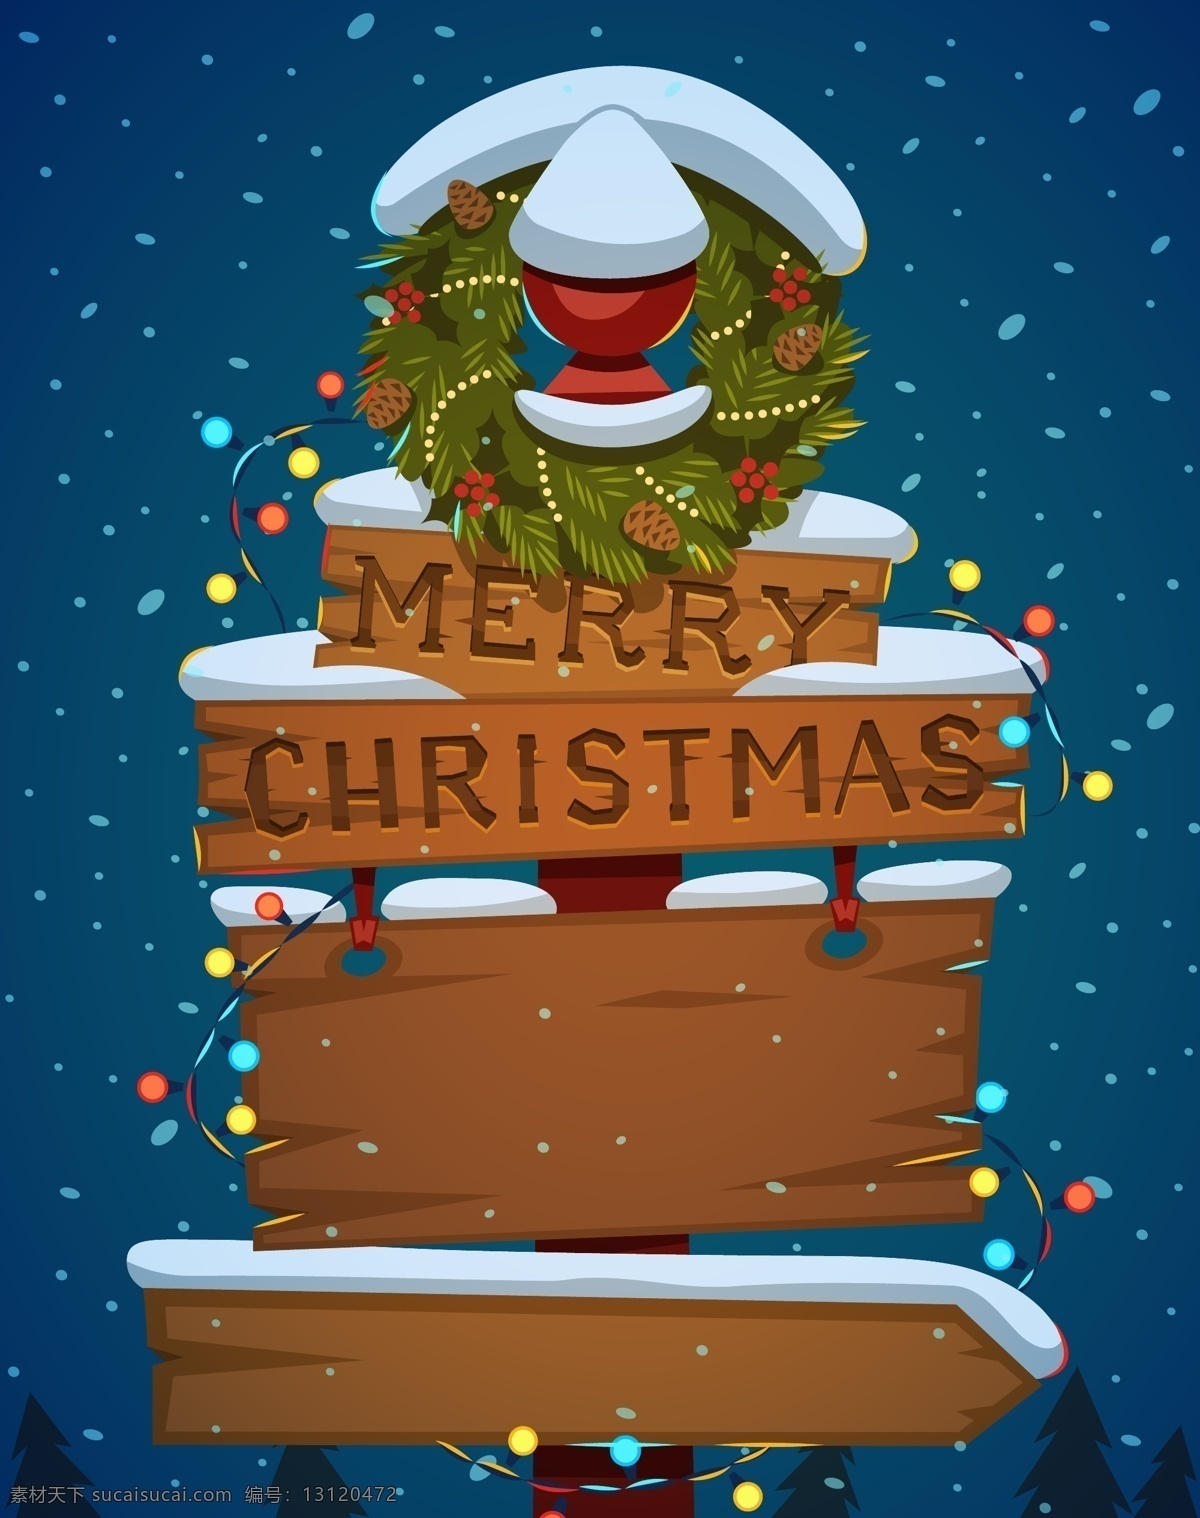 矢量 圣诞节 卡通 木板 指引 牌 背景 蓝色 圣诞树 手绘 童趣 夜晚 指引牌